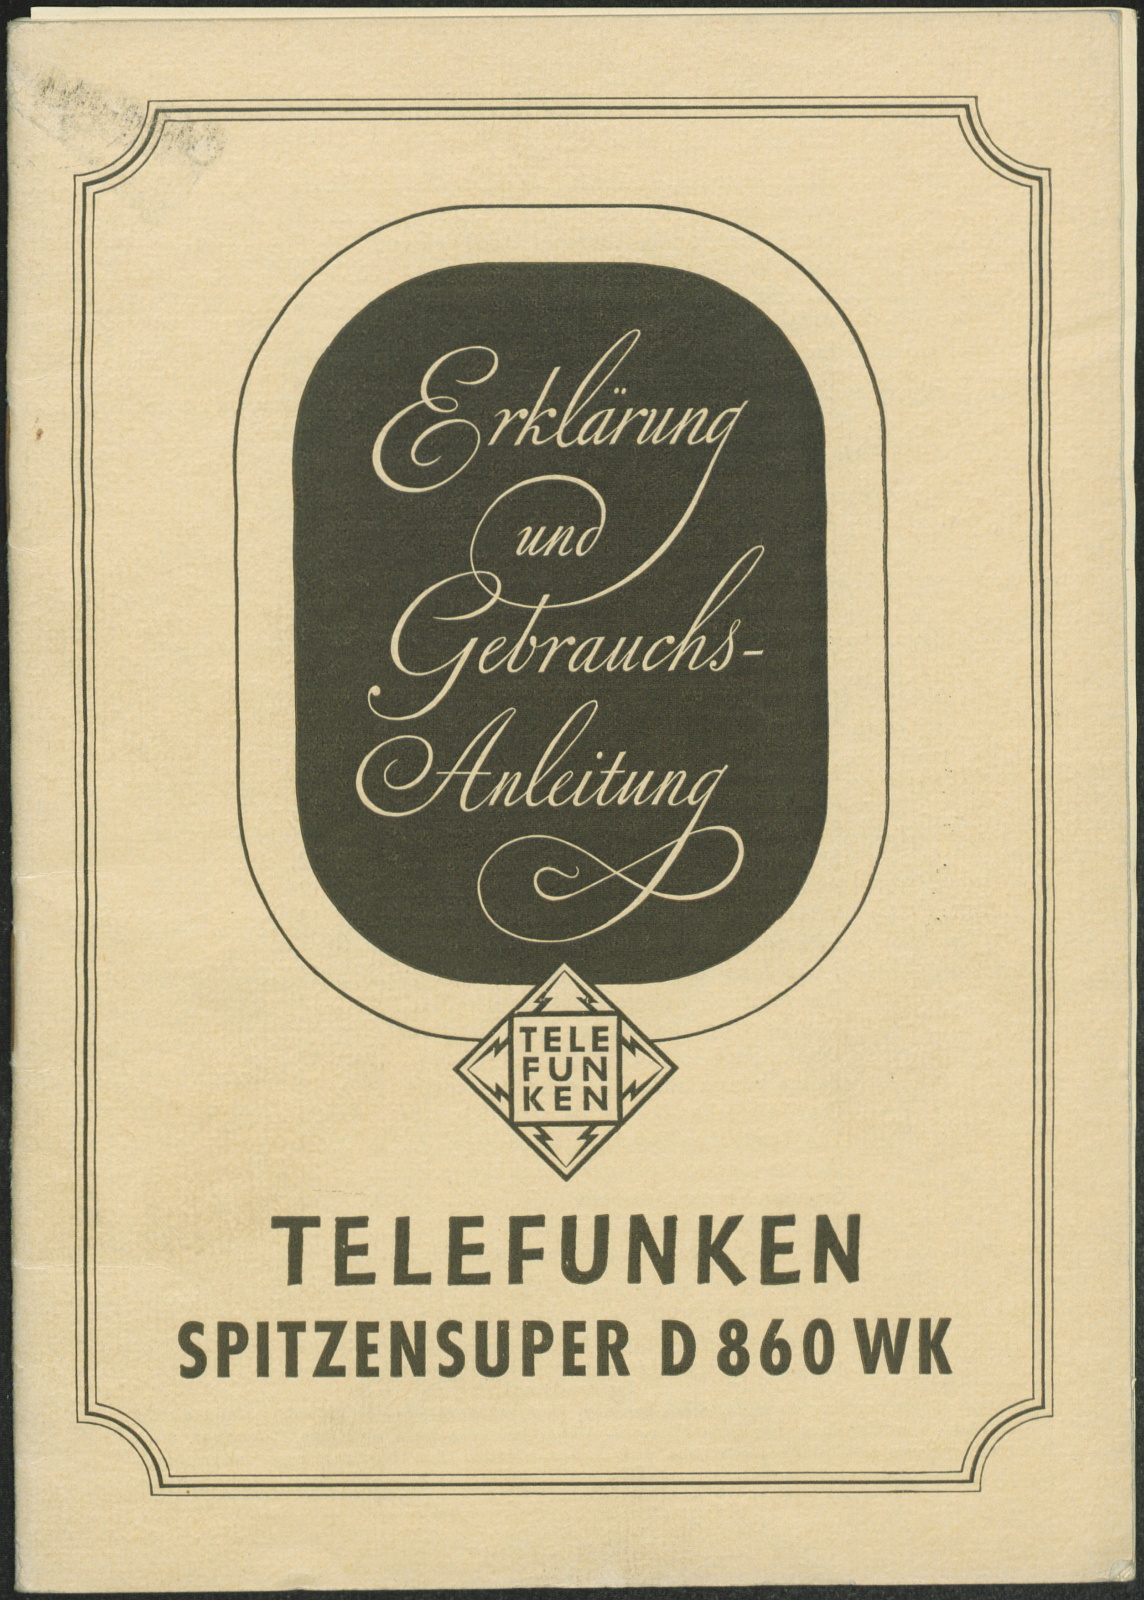 Bedienungsanleitung: Erklärung und Gebrauchsanleitung Telefunken Spitzensuper D 860 WK (Stiftung Deutsches Technikmuseum Berlin CC0)